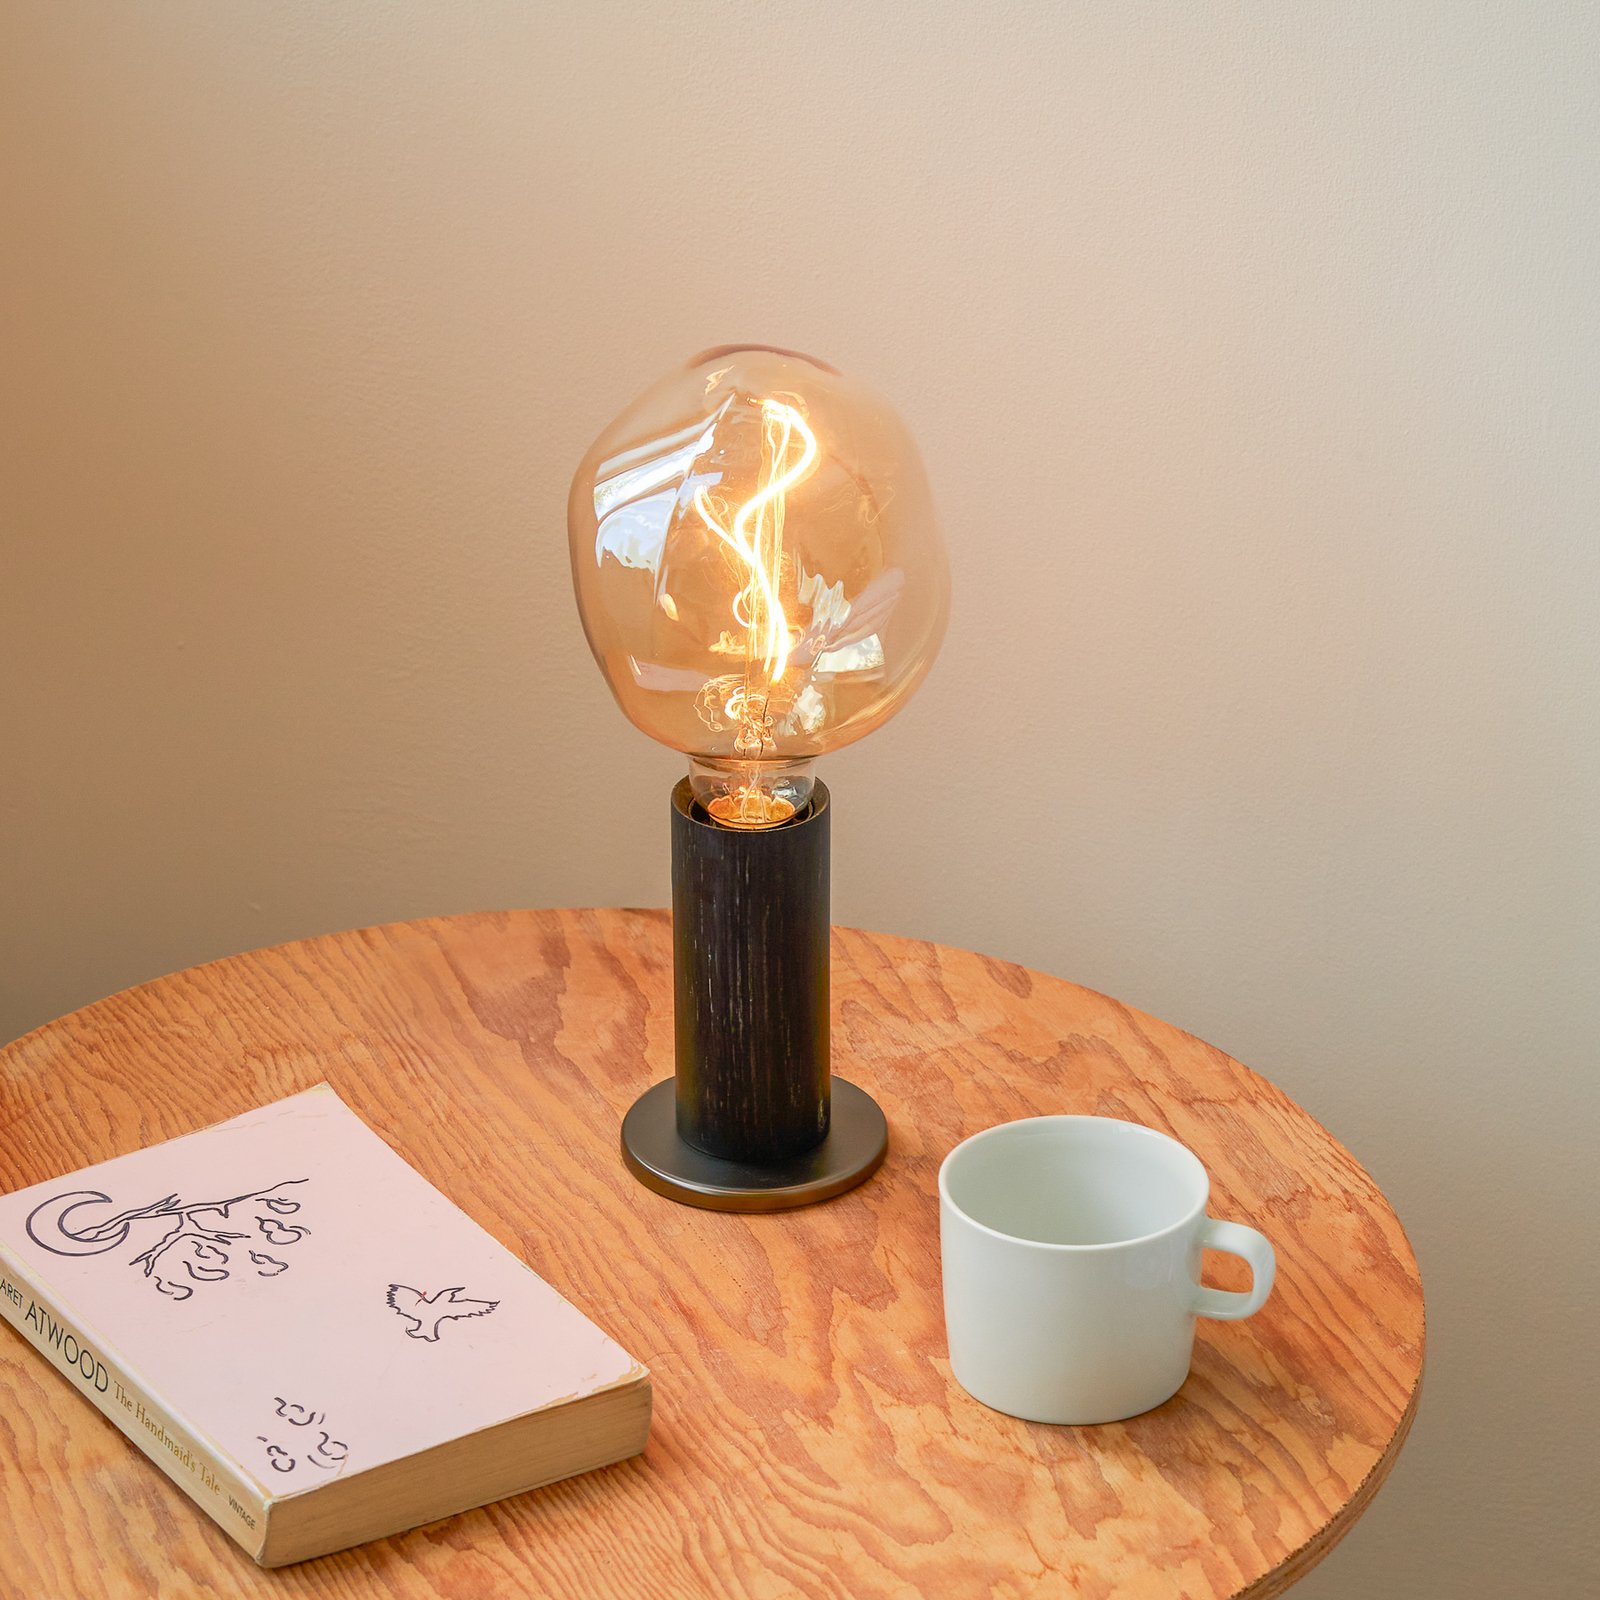 Lampa stołowa Tala Knuckle, przezroczysta żarówka globe kulista, czarny dąb